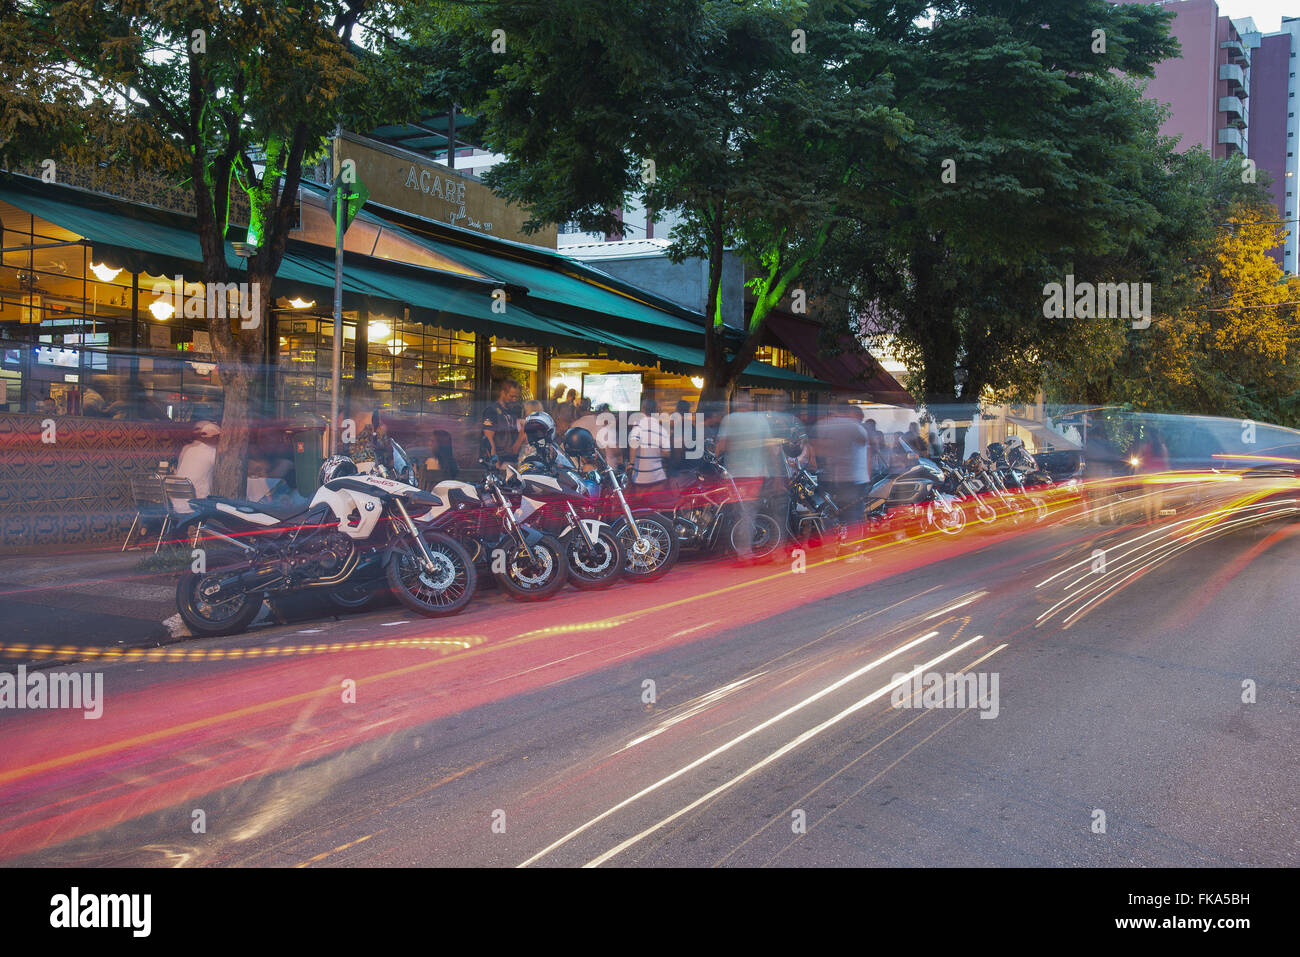 Jacare Grill - Restaurante frecuentado por ciclistas en armonía Street - Vila Madalena Foto de stock